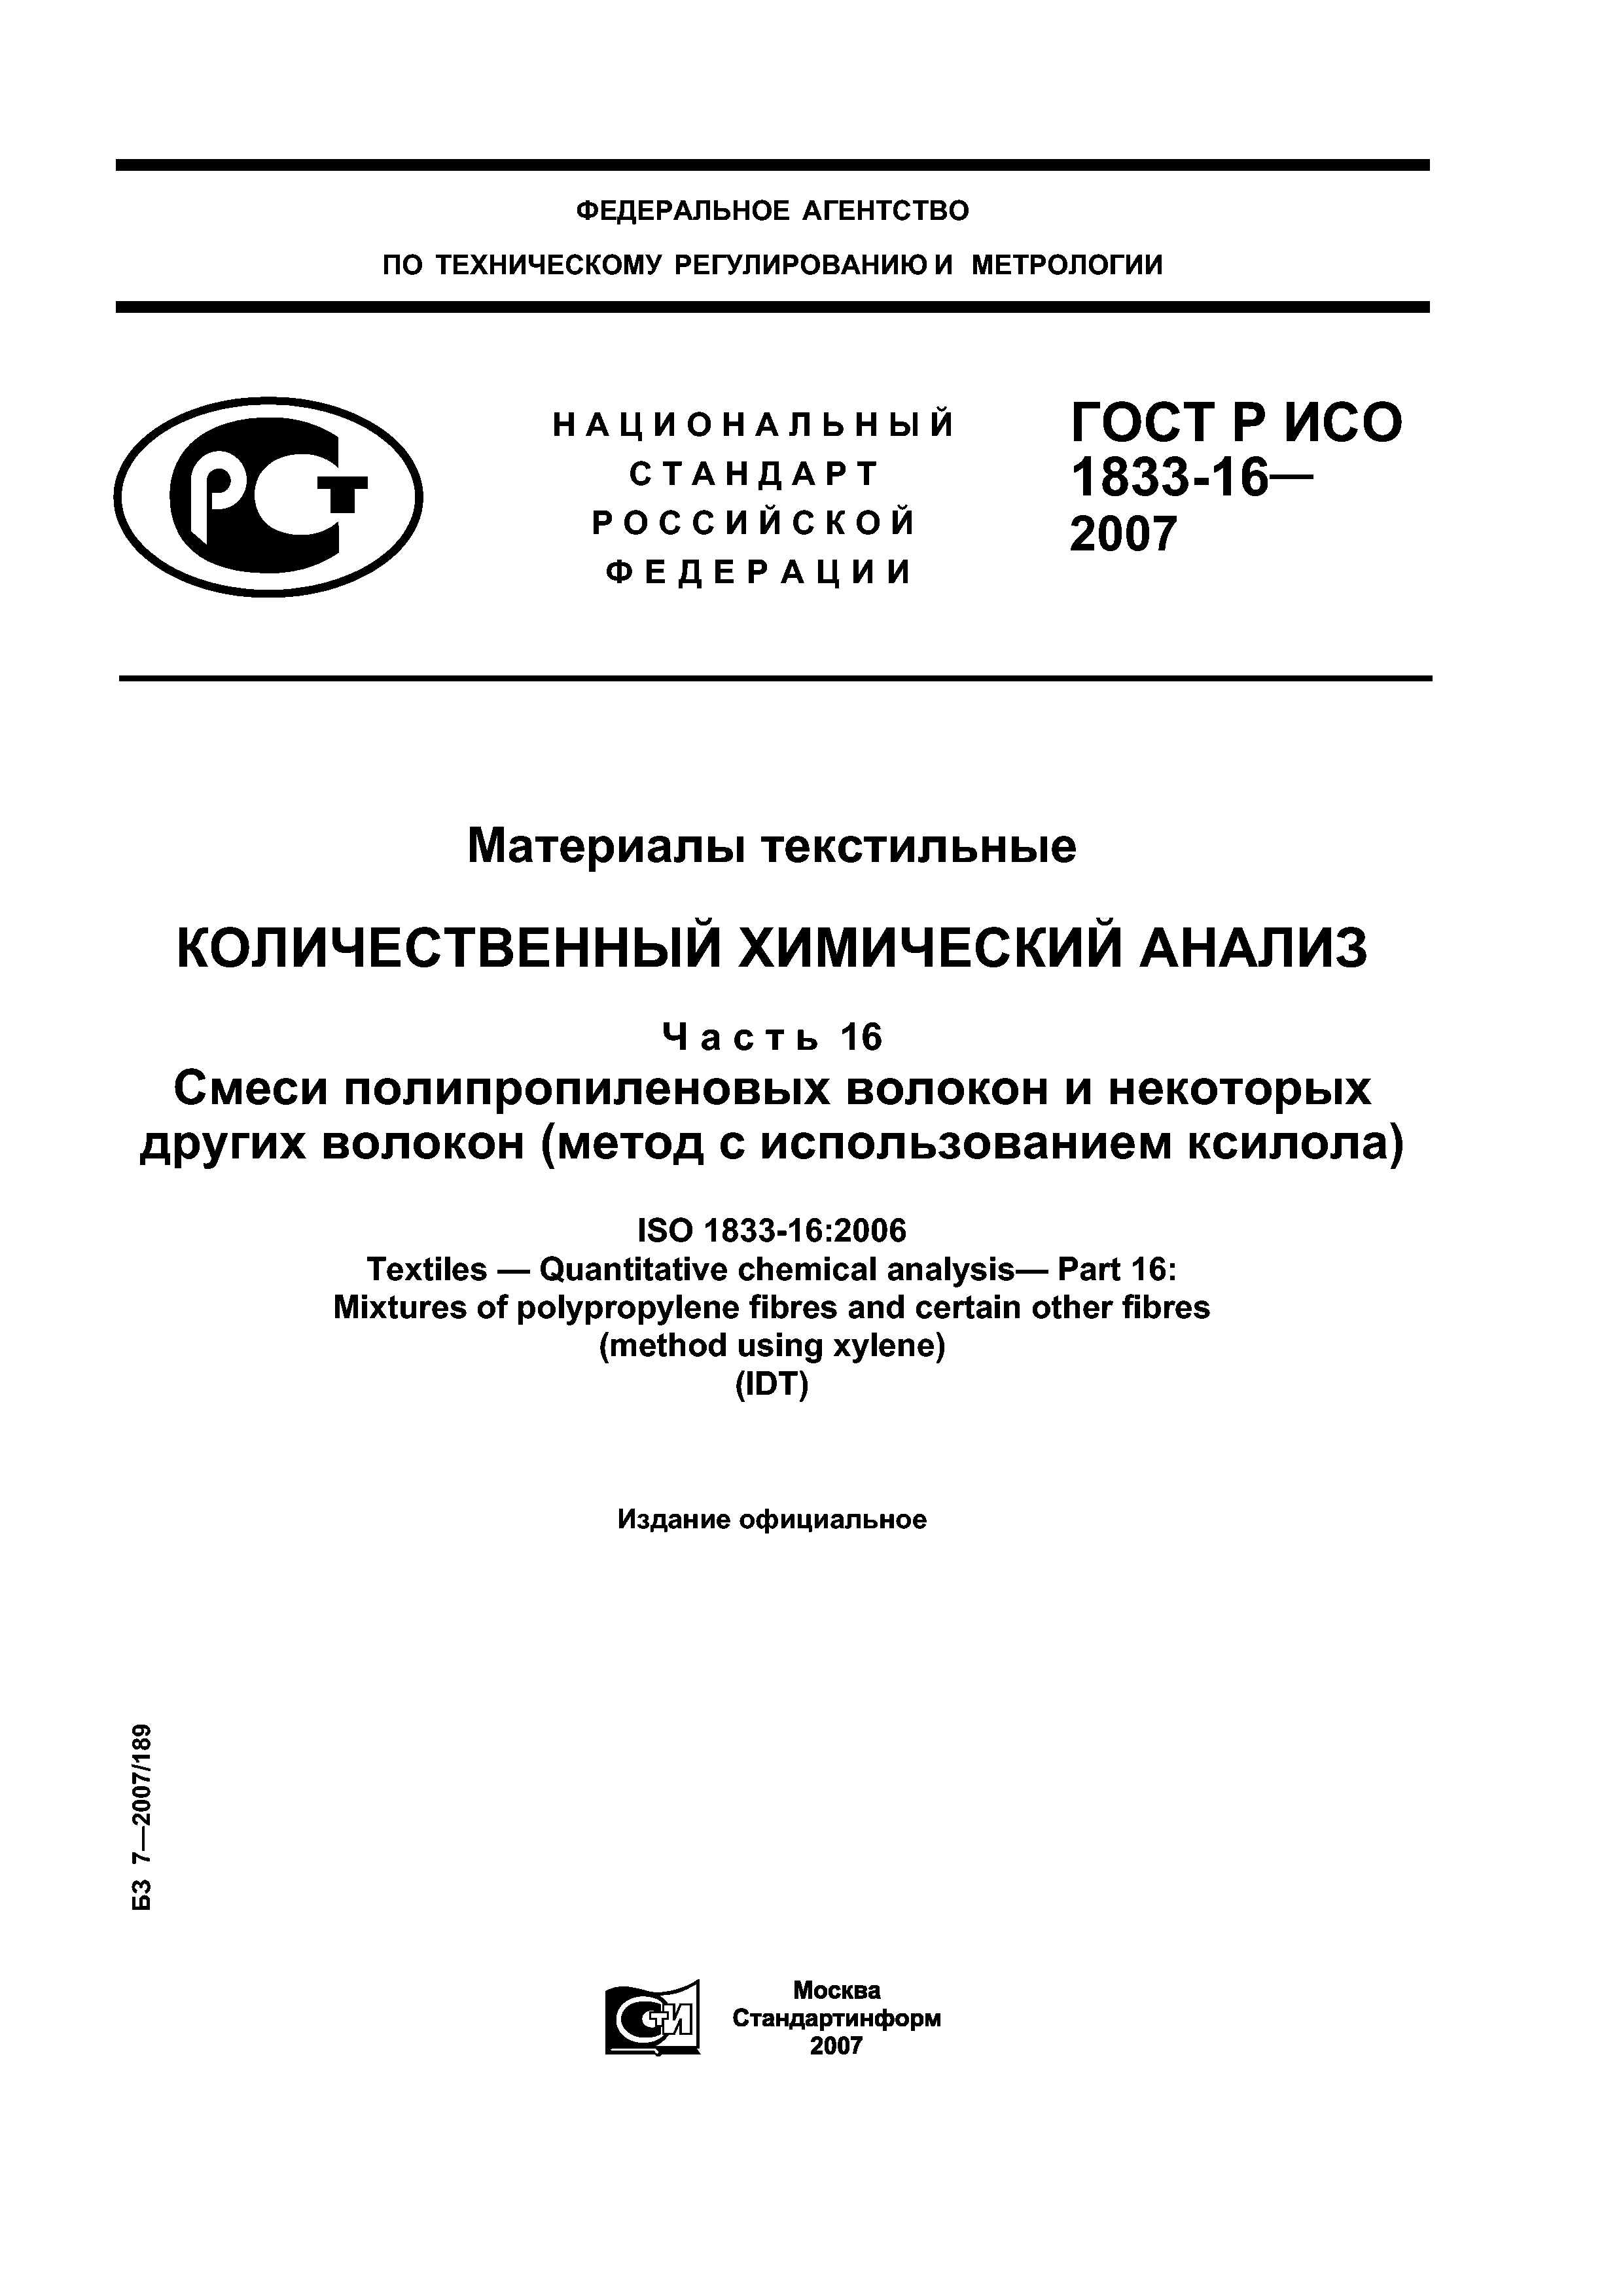 ГОСТ Р ИСО 1833-16-2007